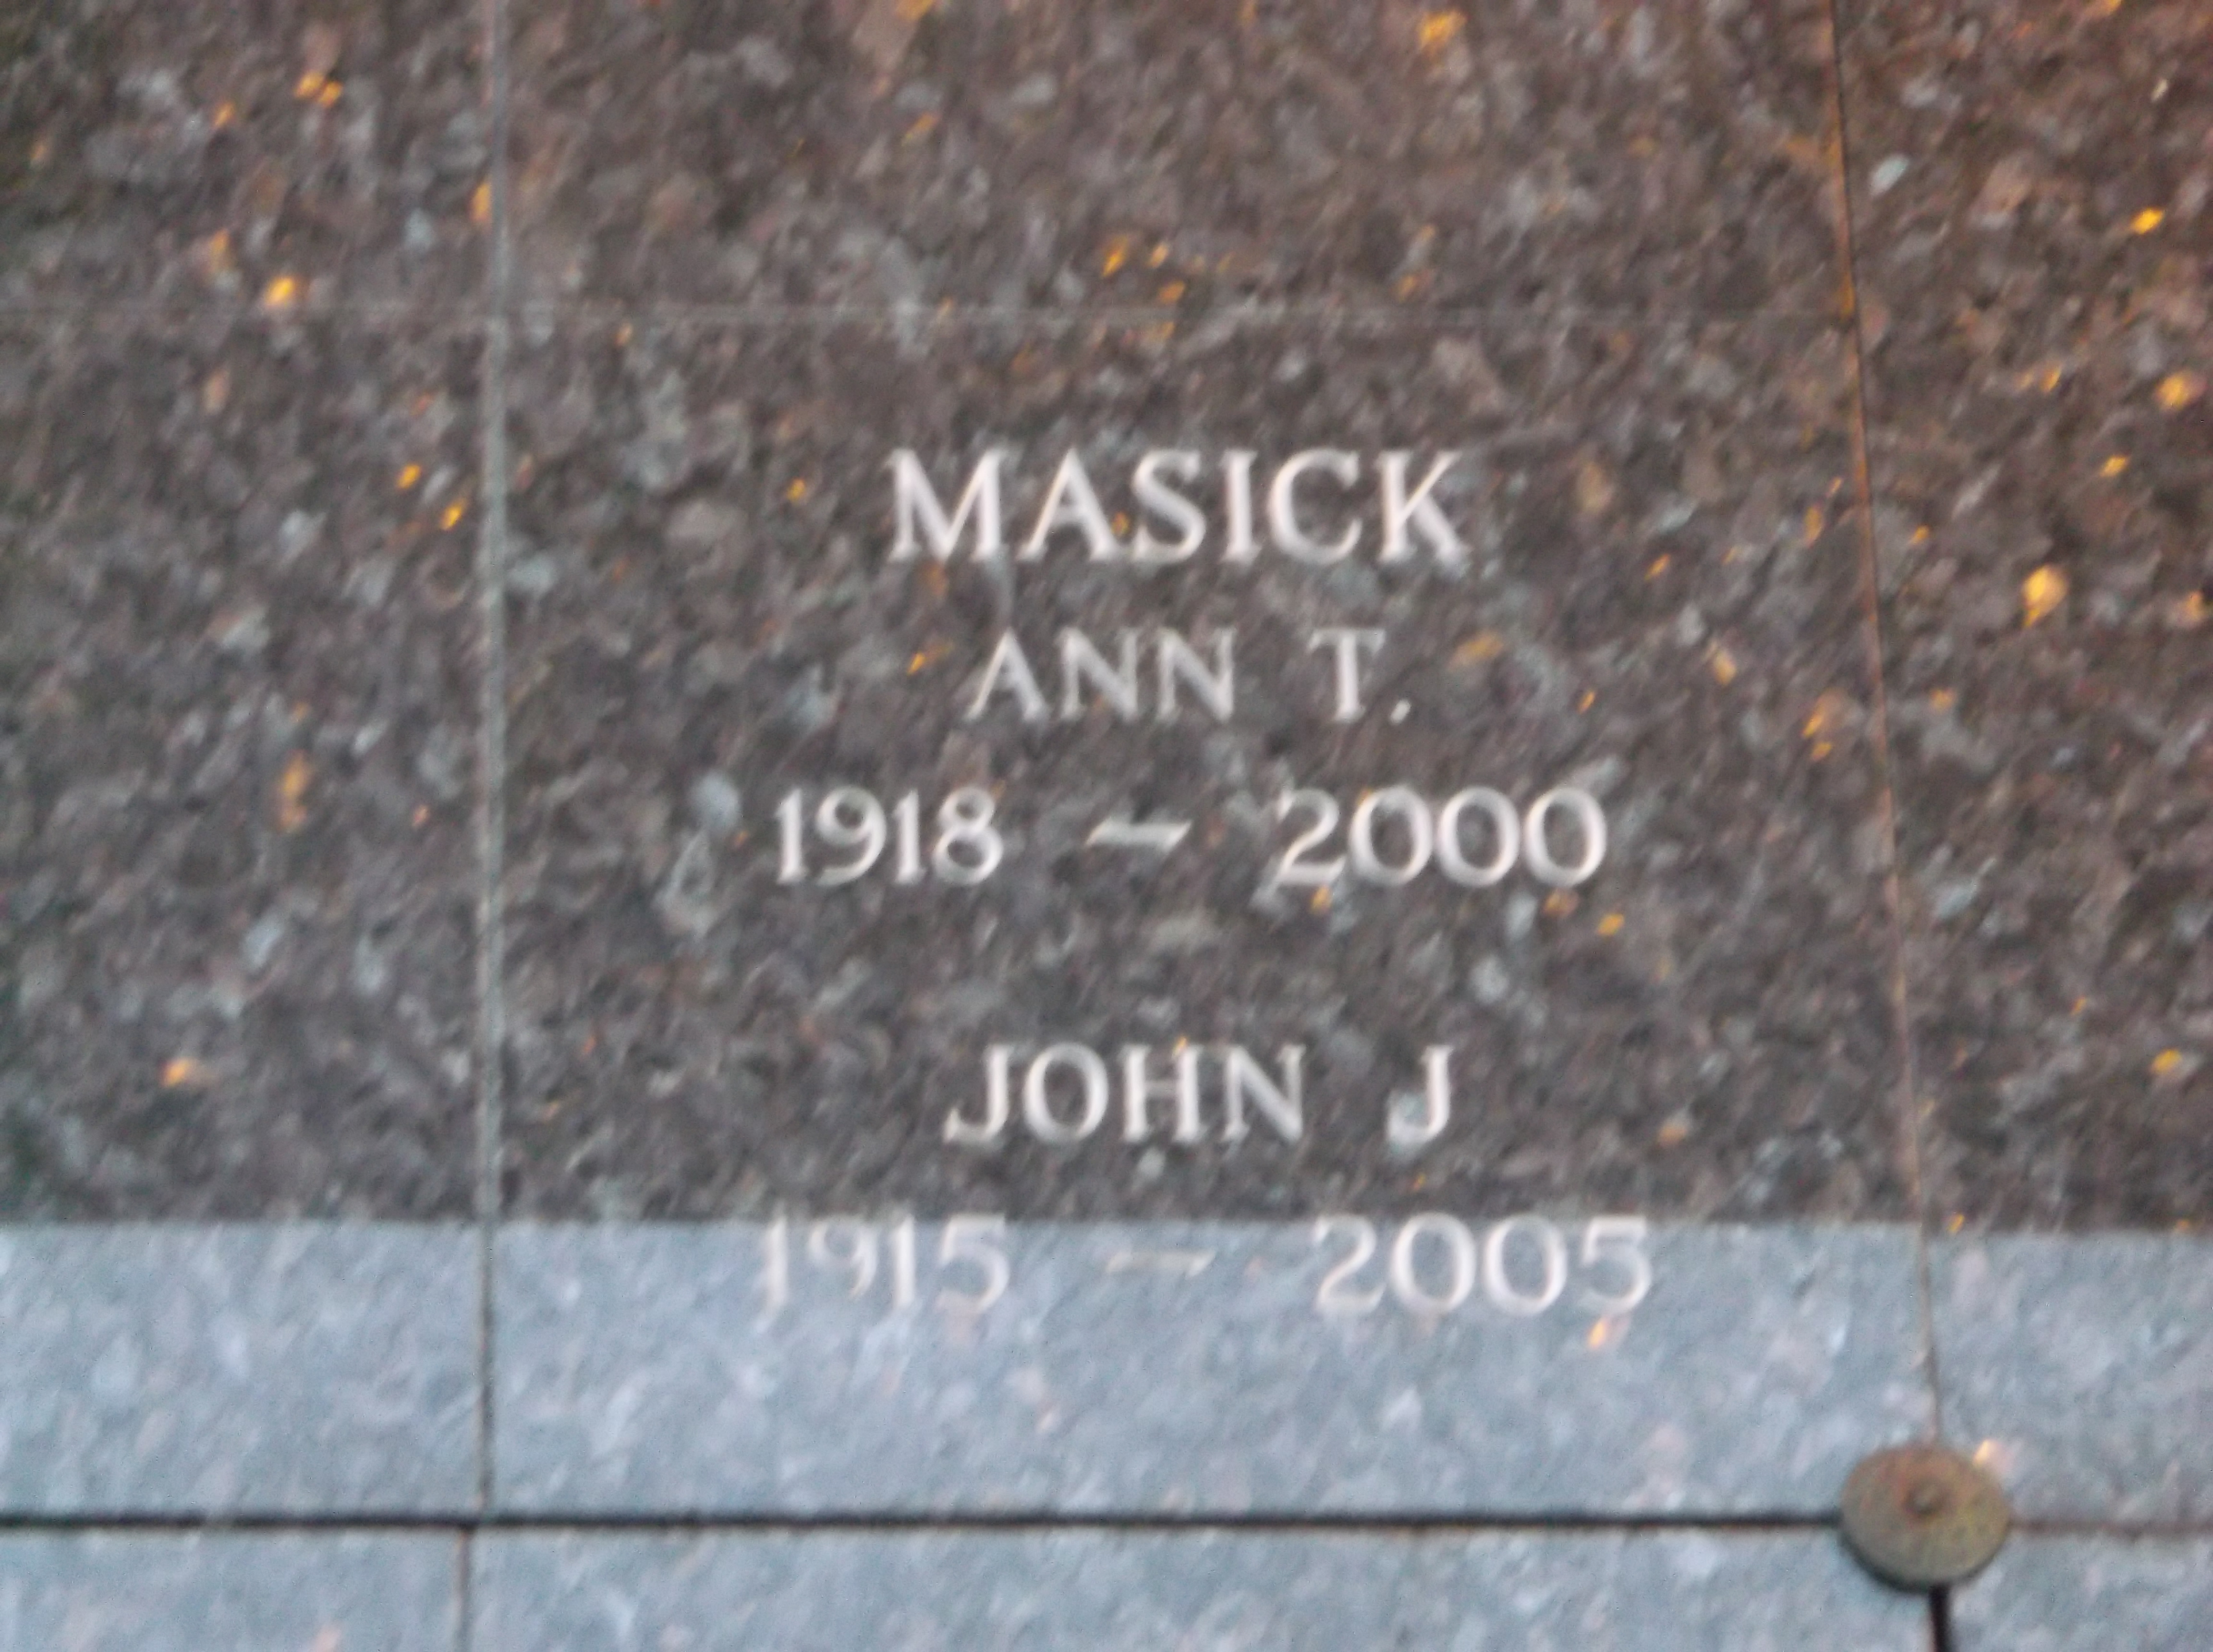 John J Masick